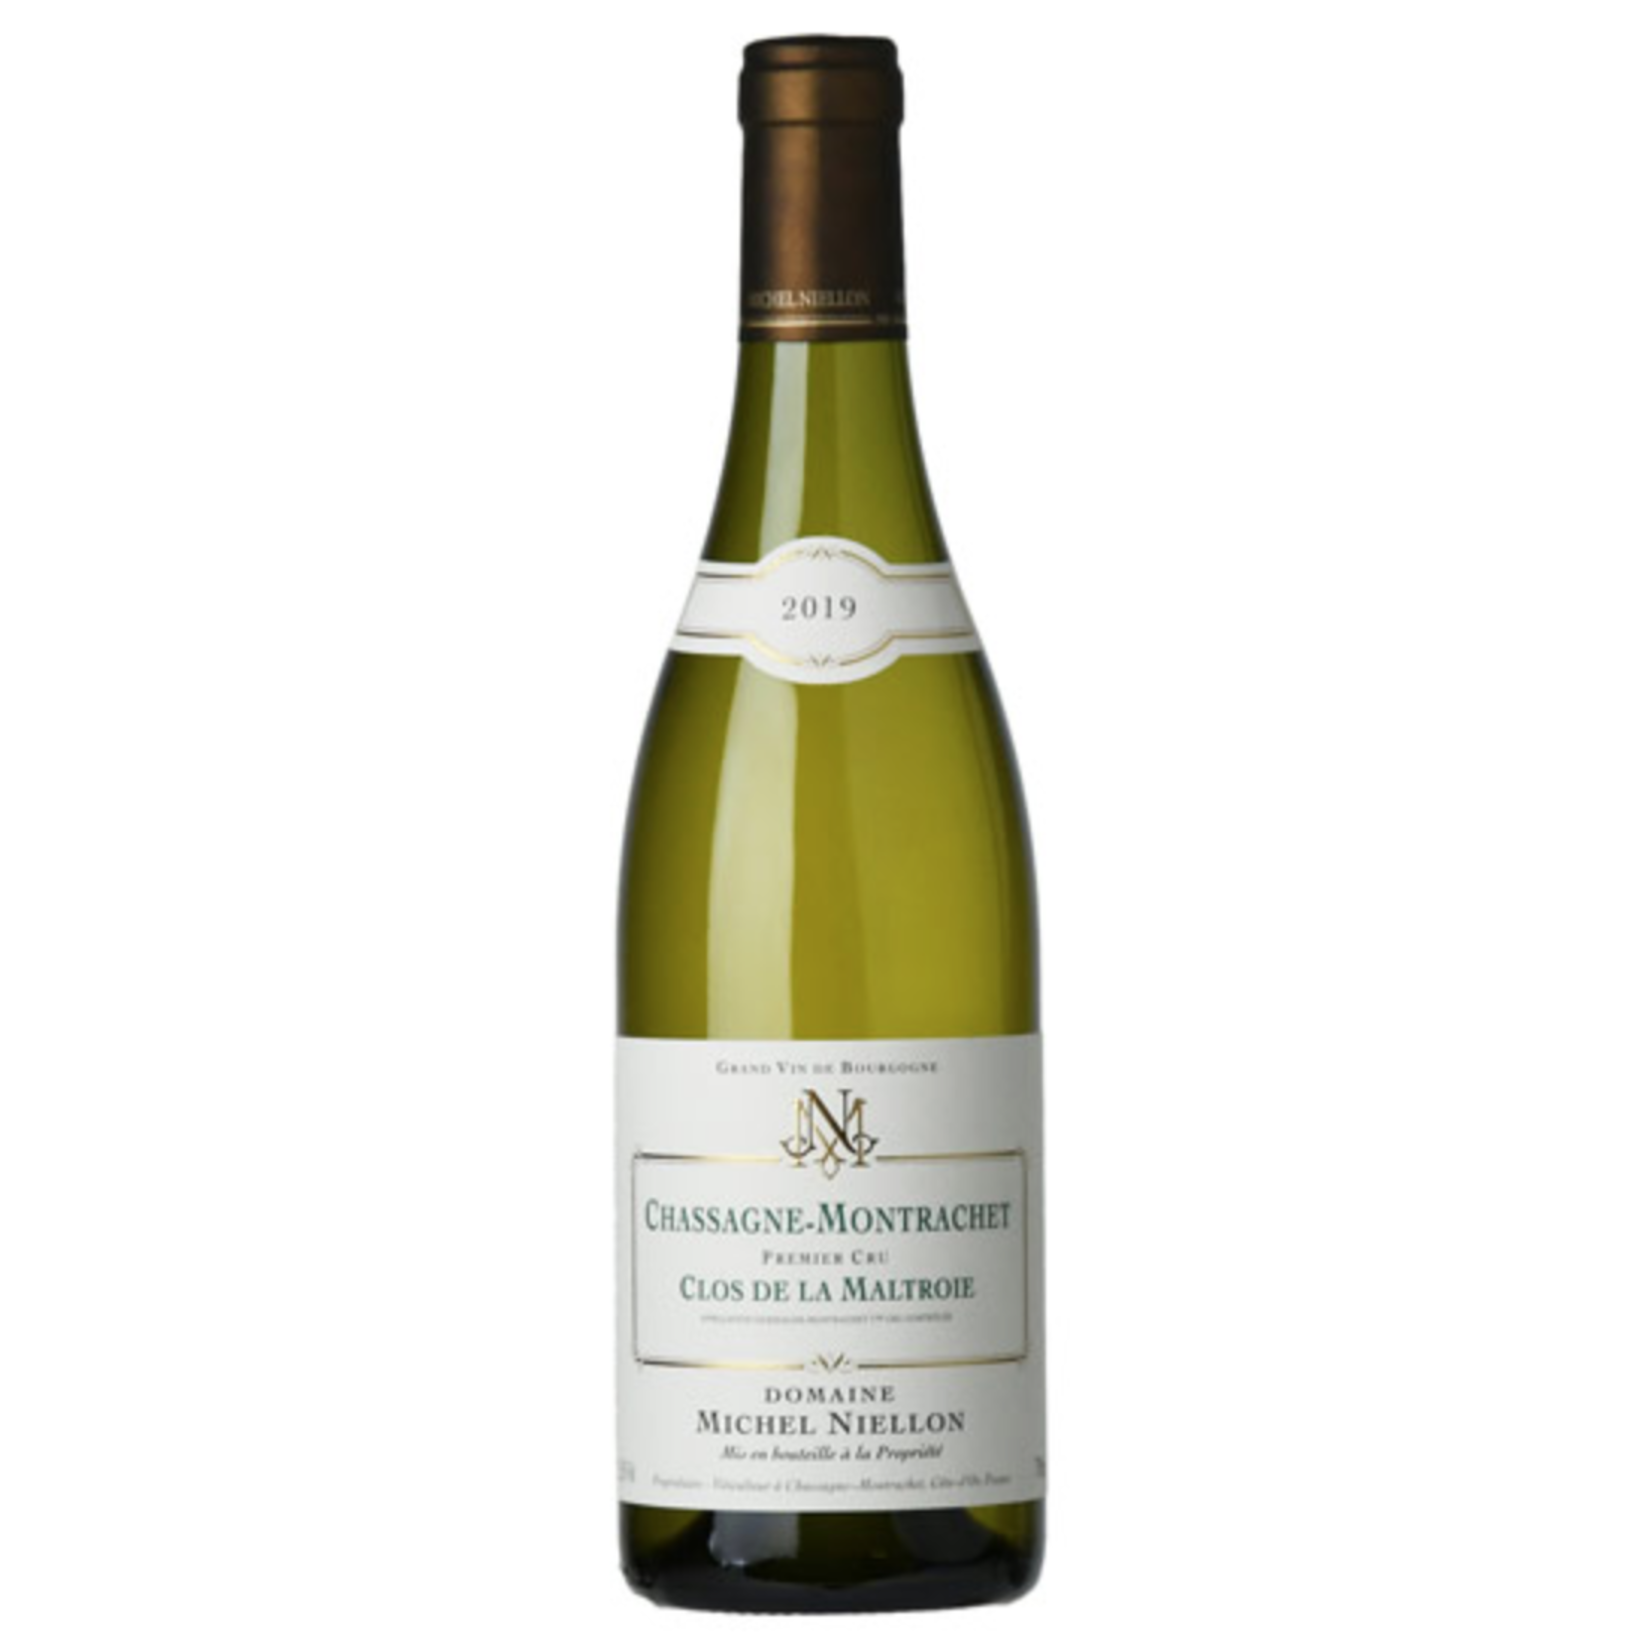 Wine Domaine Michel Niellon Chassagne-Montrachet 1er Cru "La Maltroie" 2019